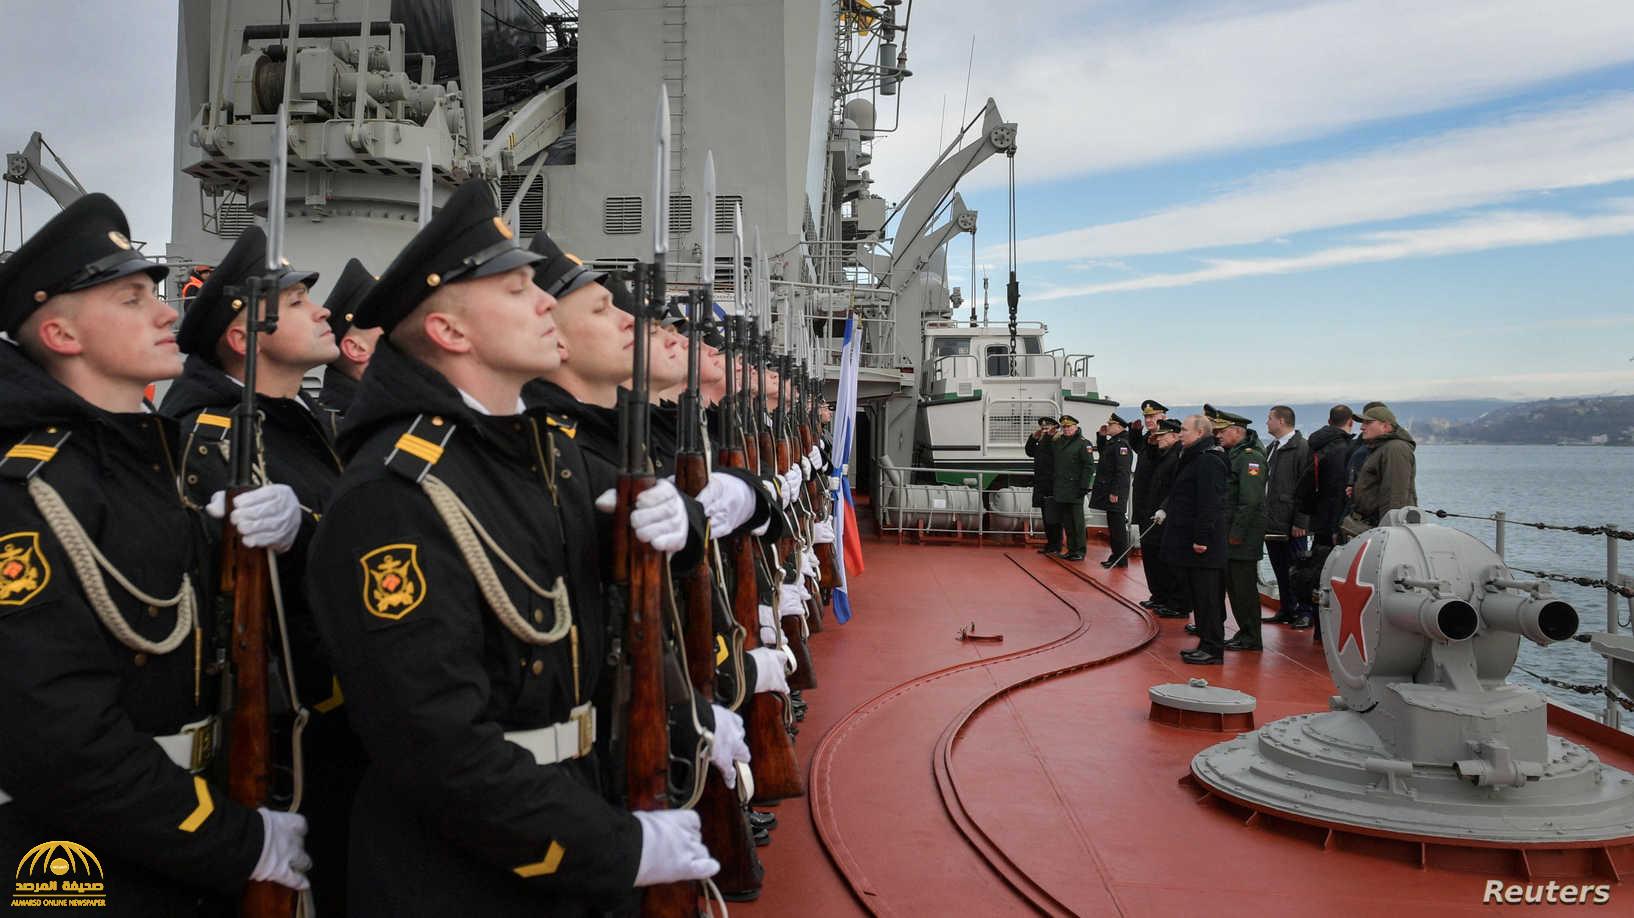 أميركا تتأهب مع تصعيد روسيا عسكريا في أوروبا الشرقية والقطب الشمالي